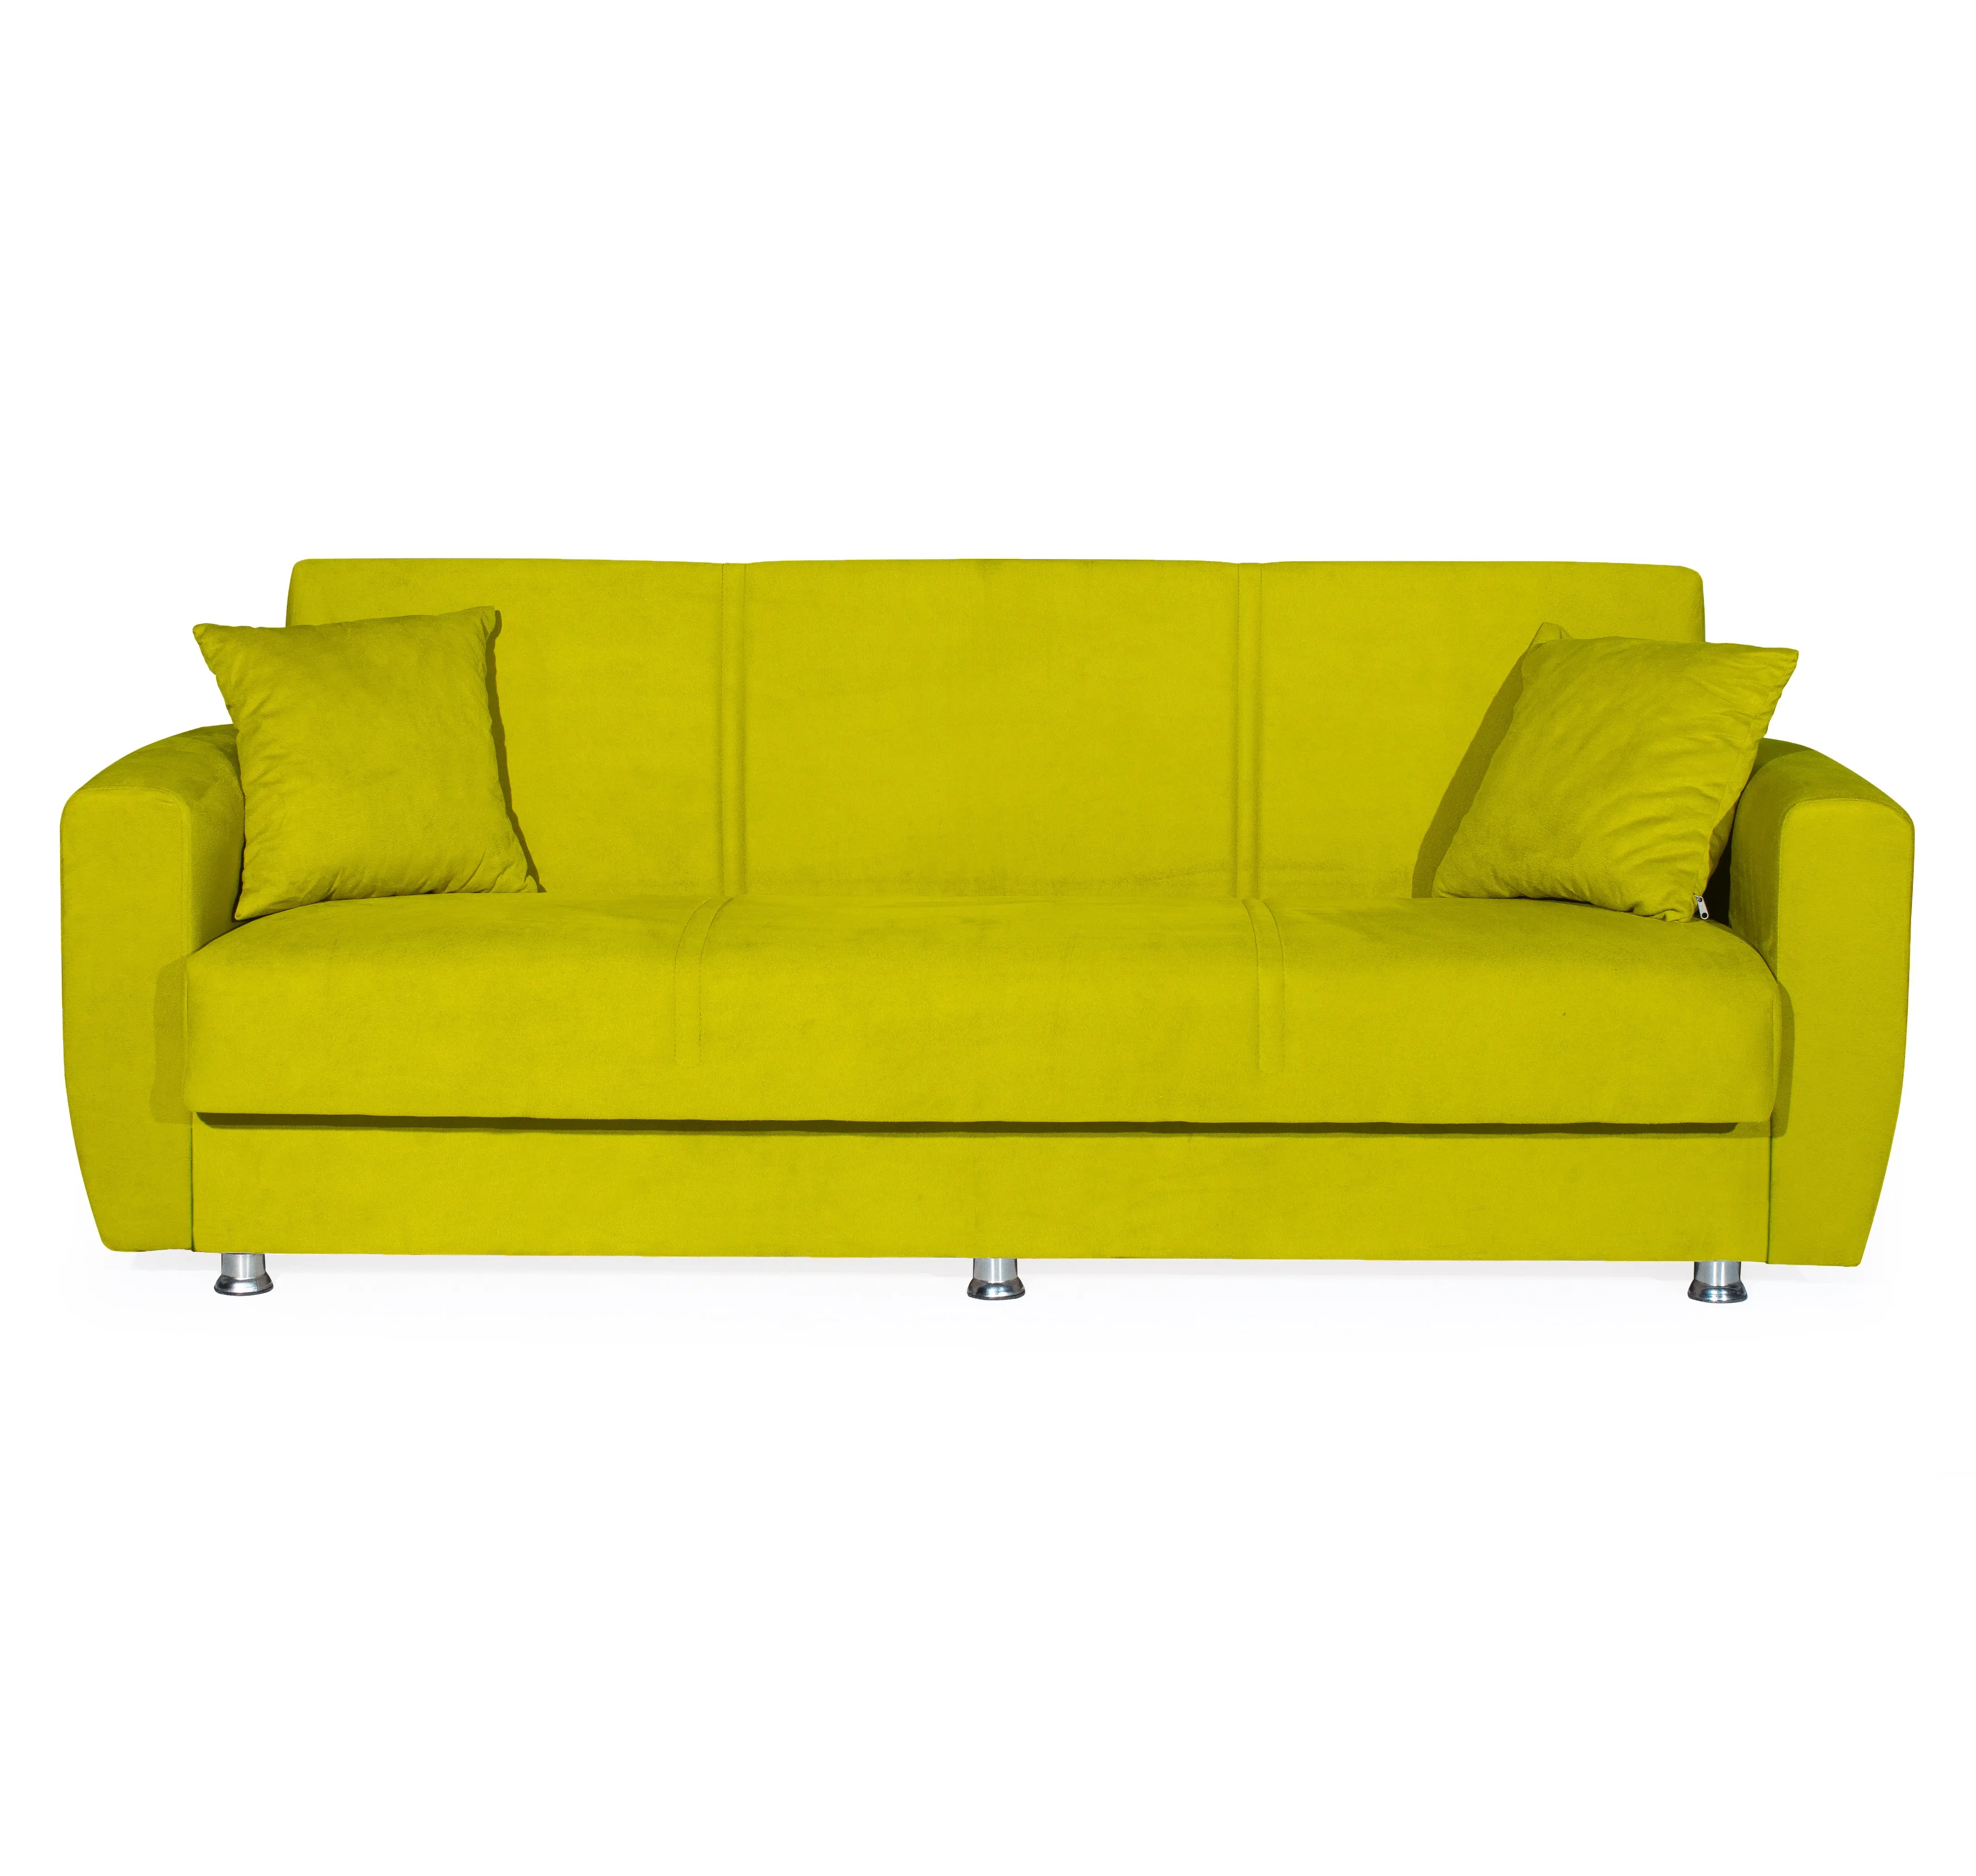 DOLCE-sofá moderno para el hogar, mueble de almacenamiento suave, económico, color amarillo, el mejor precio, promoción